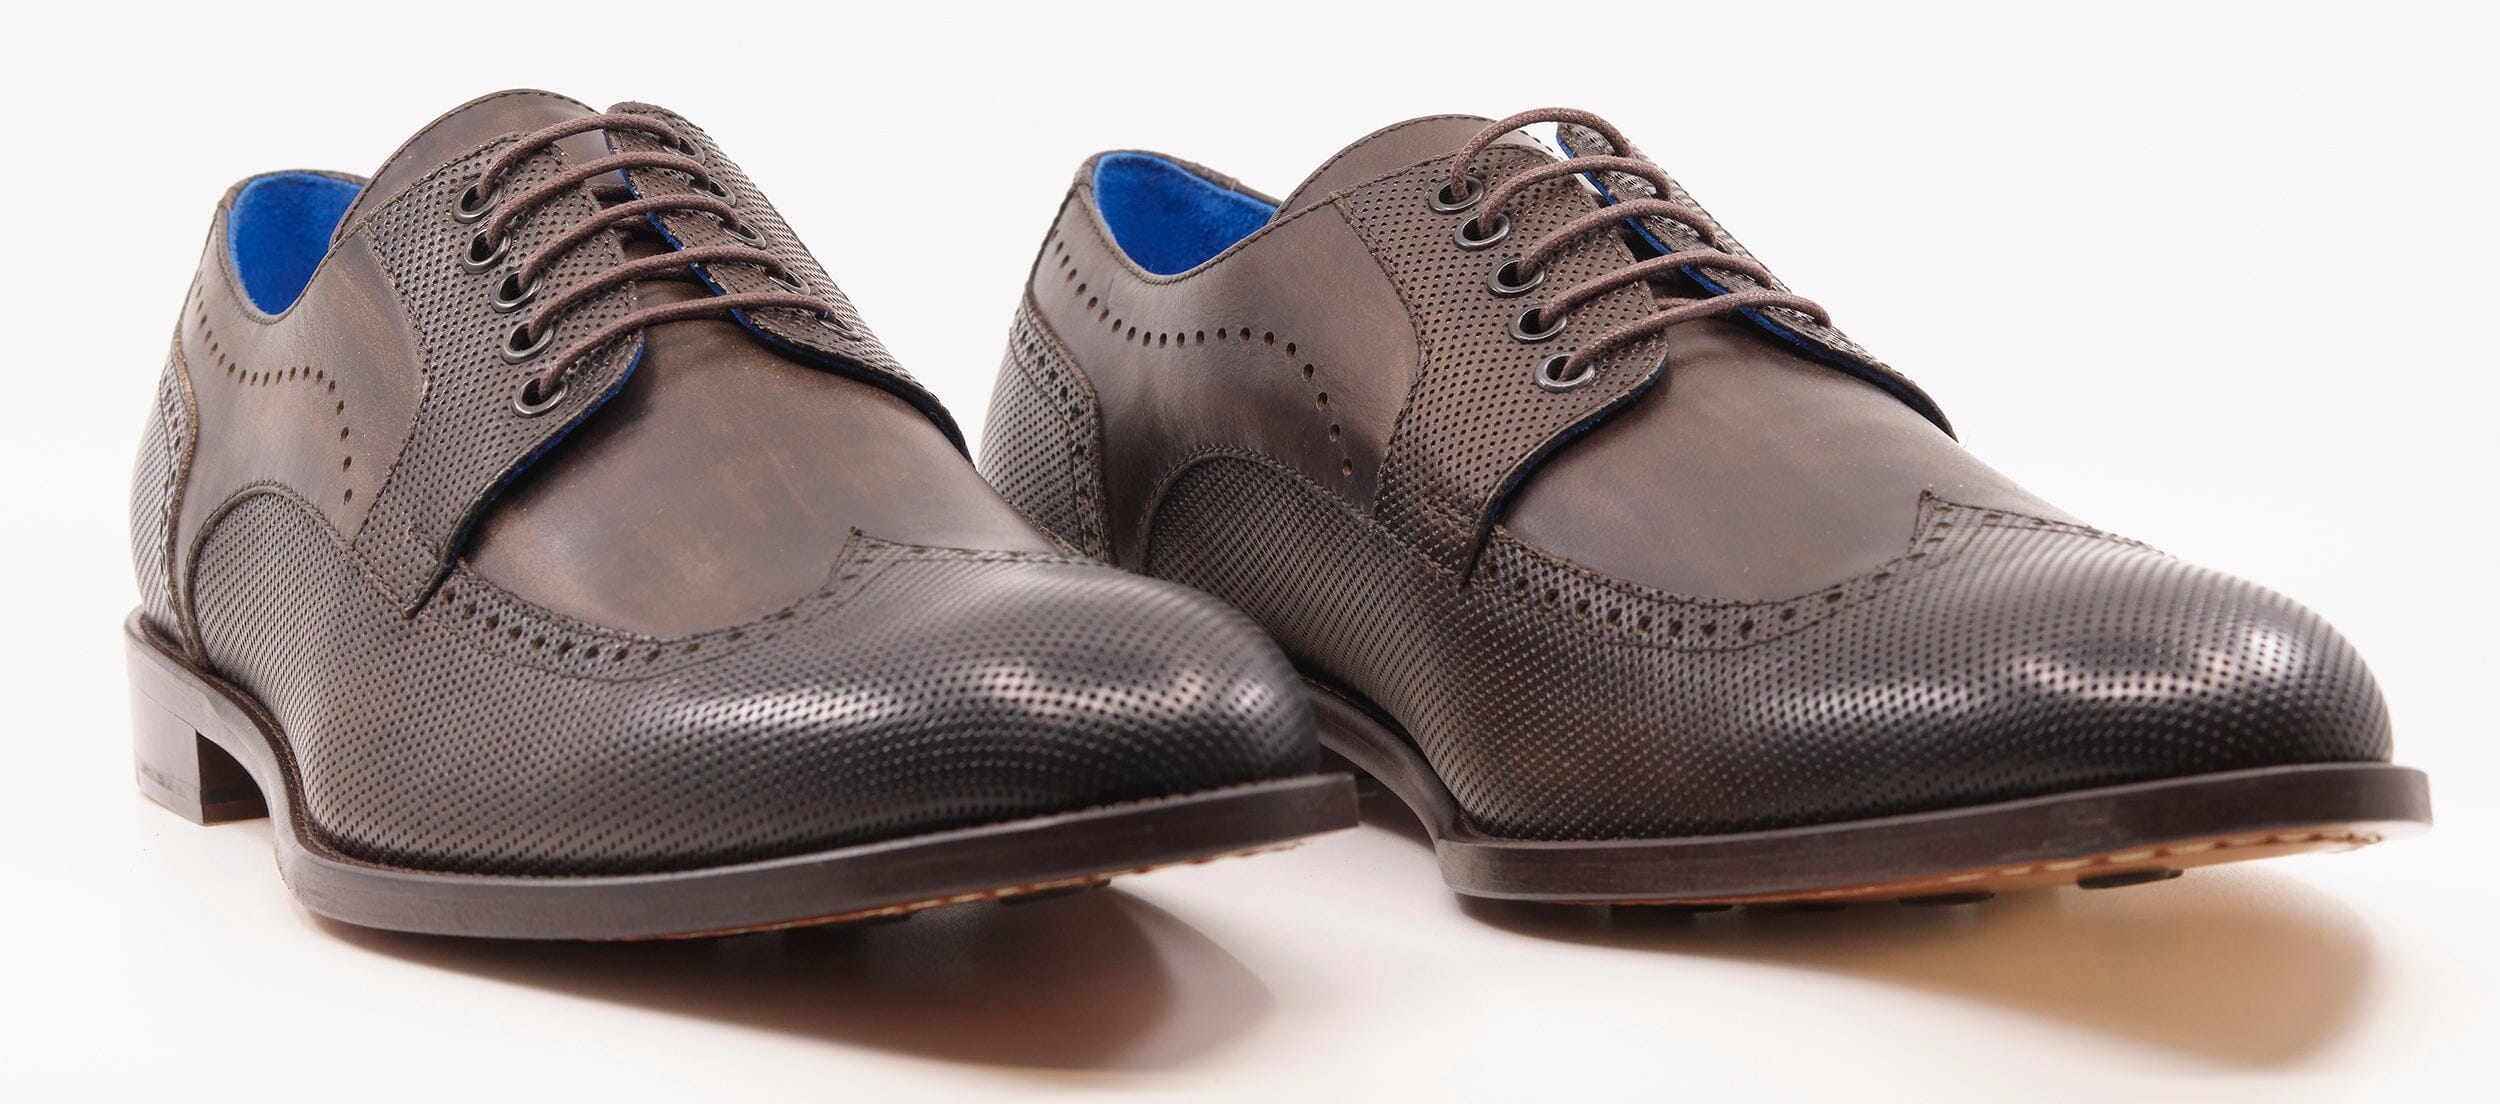 Shoe Class Select Brown